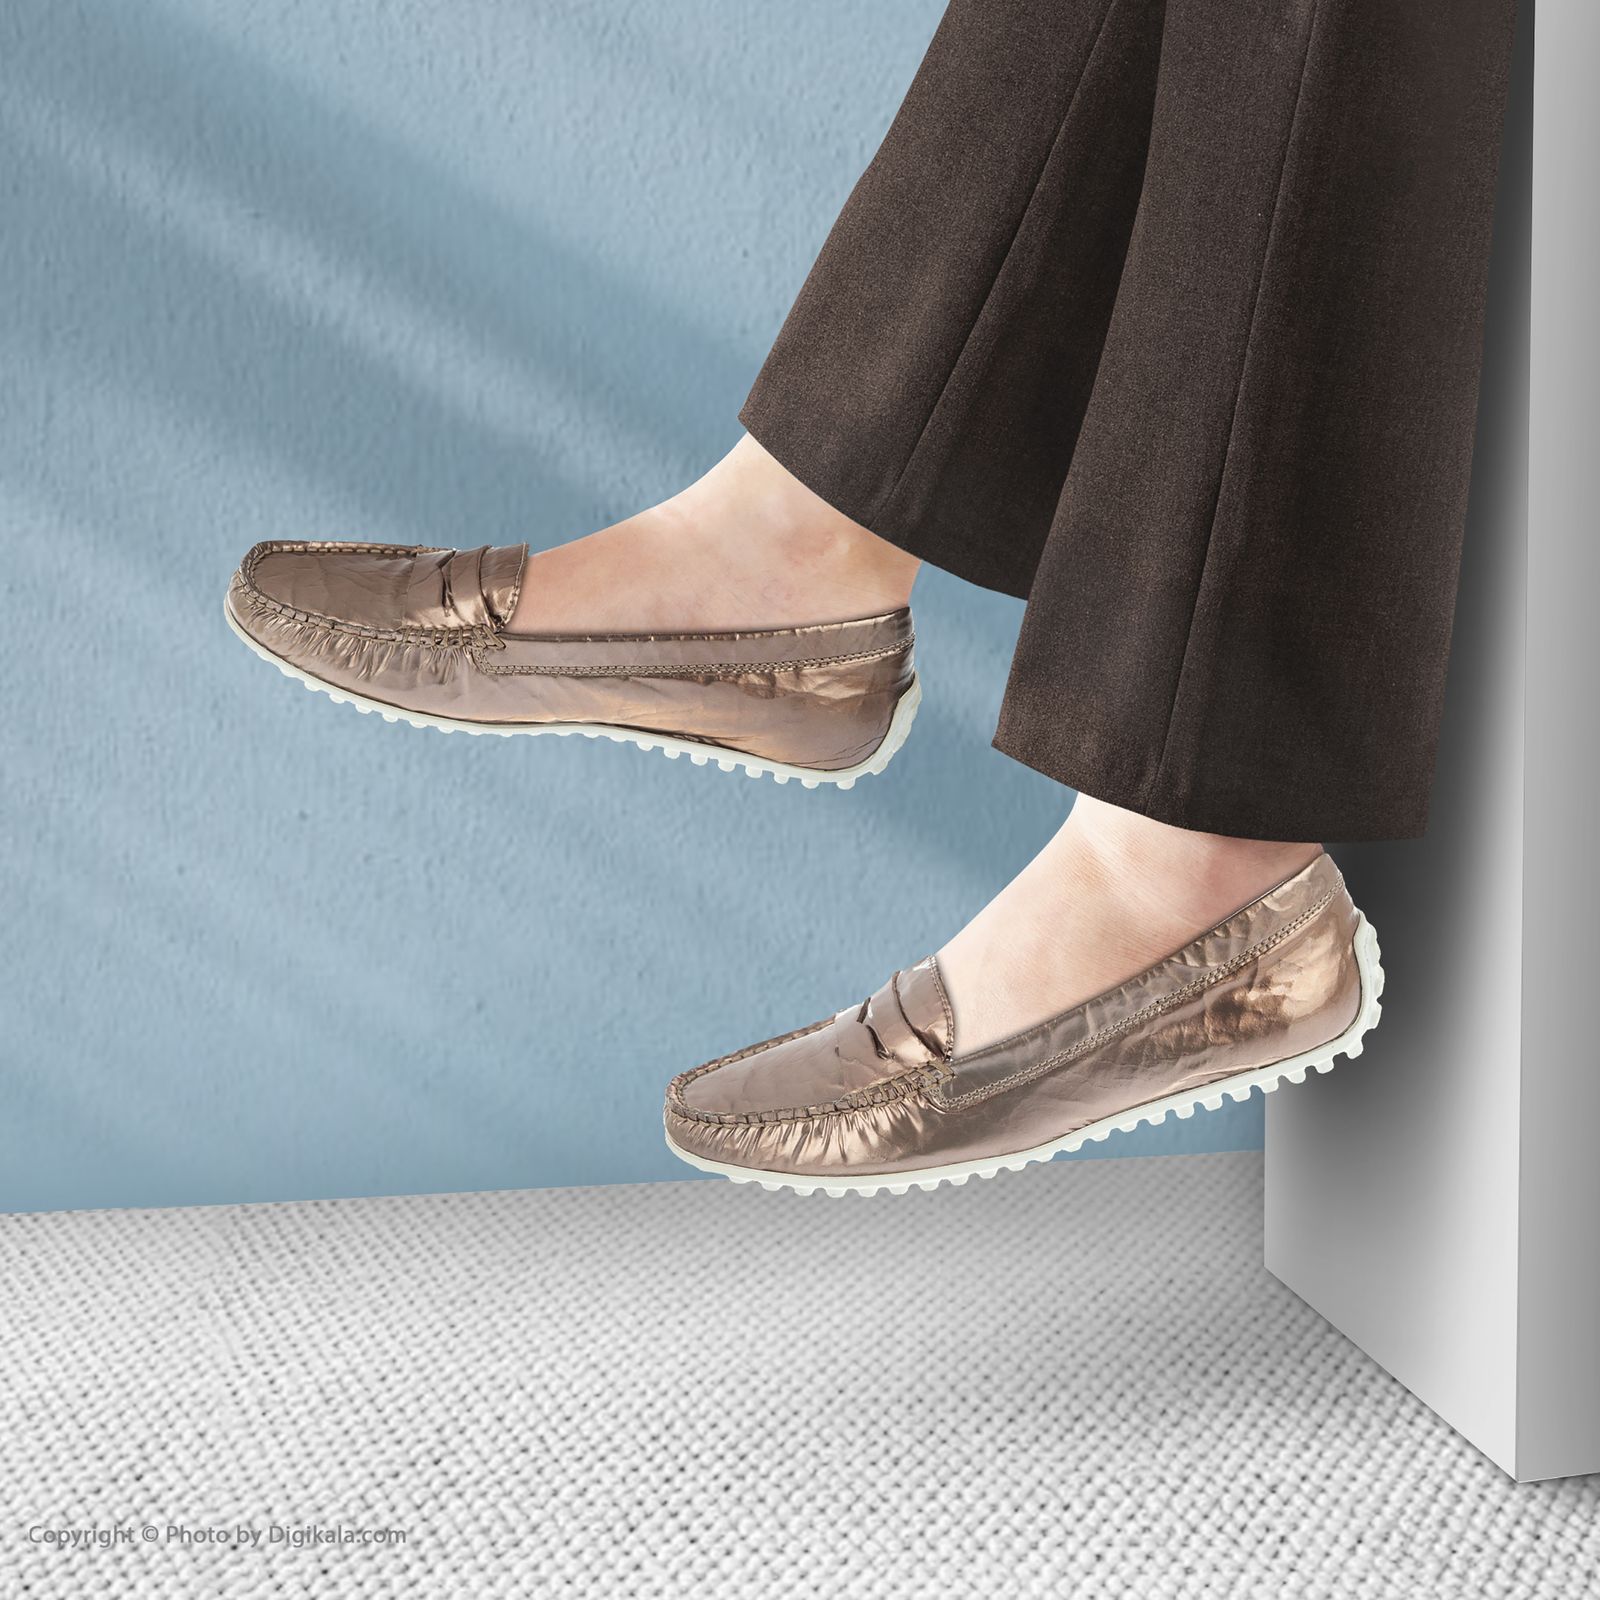 کفش زنانه هوگل مدل 3-100515-4700 - زیتونی - 2